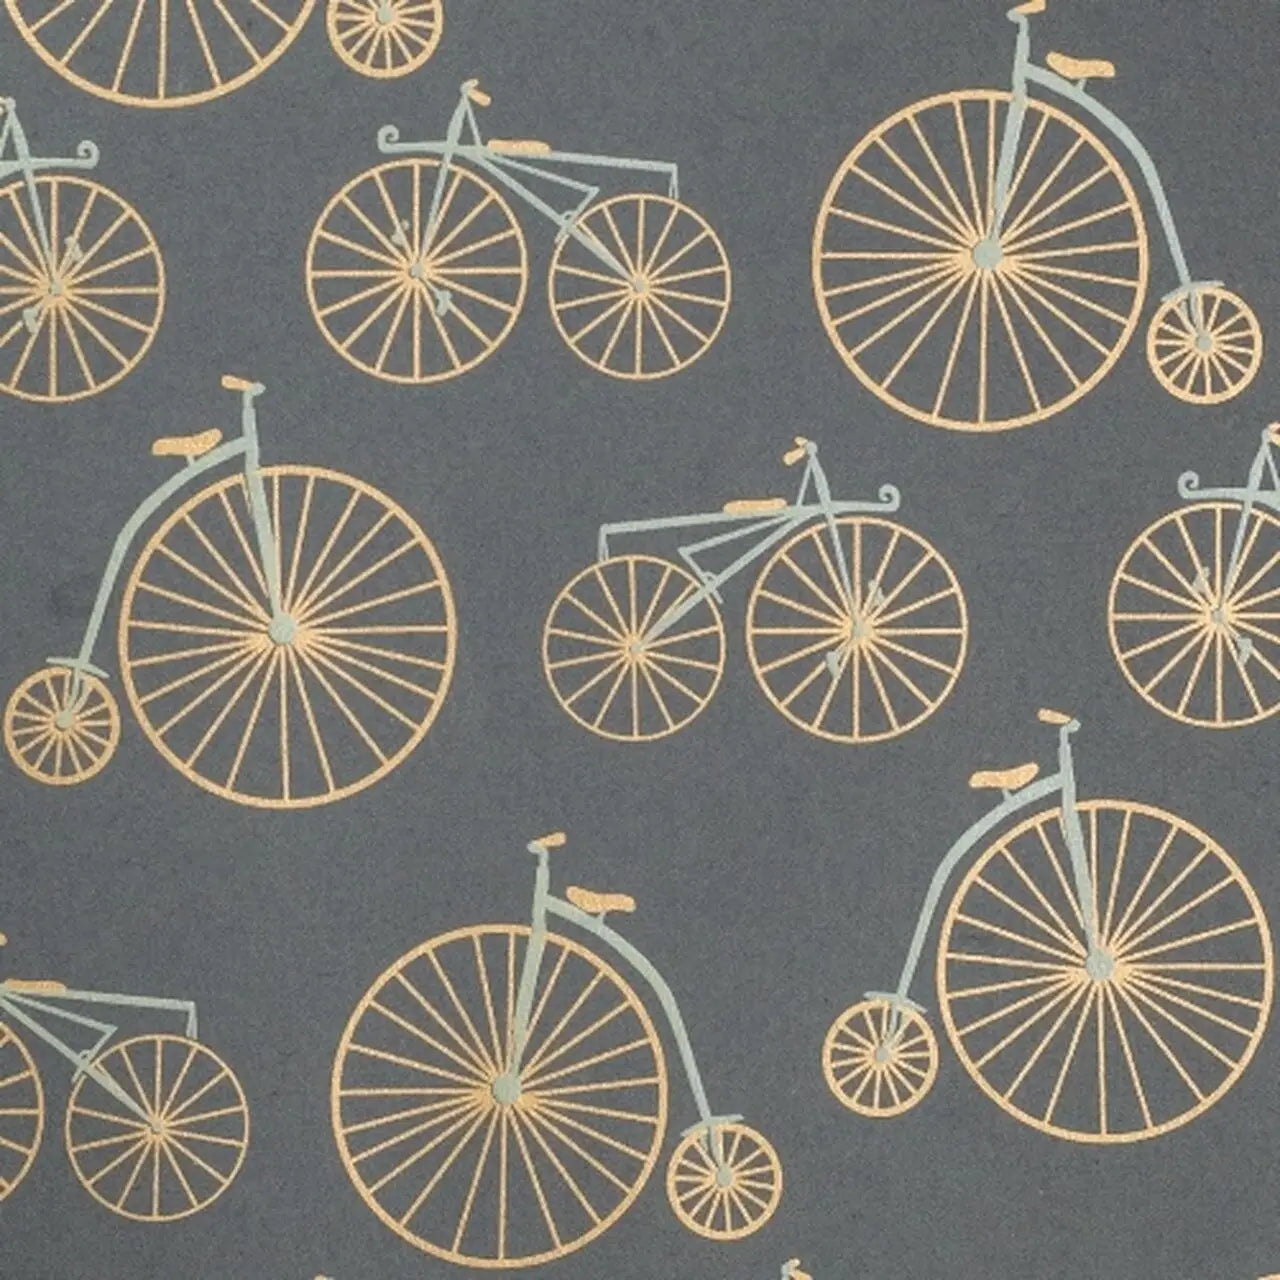 Bicycles Gift Wrap Sheet